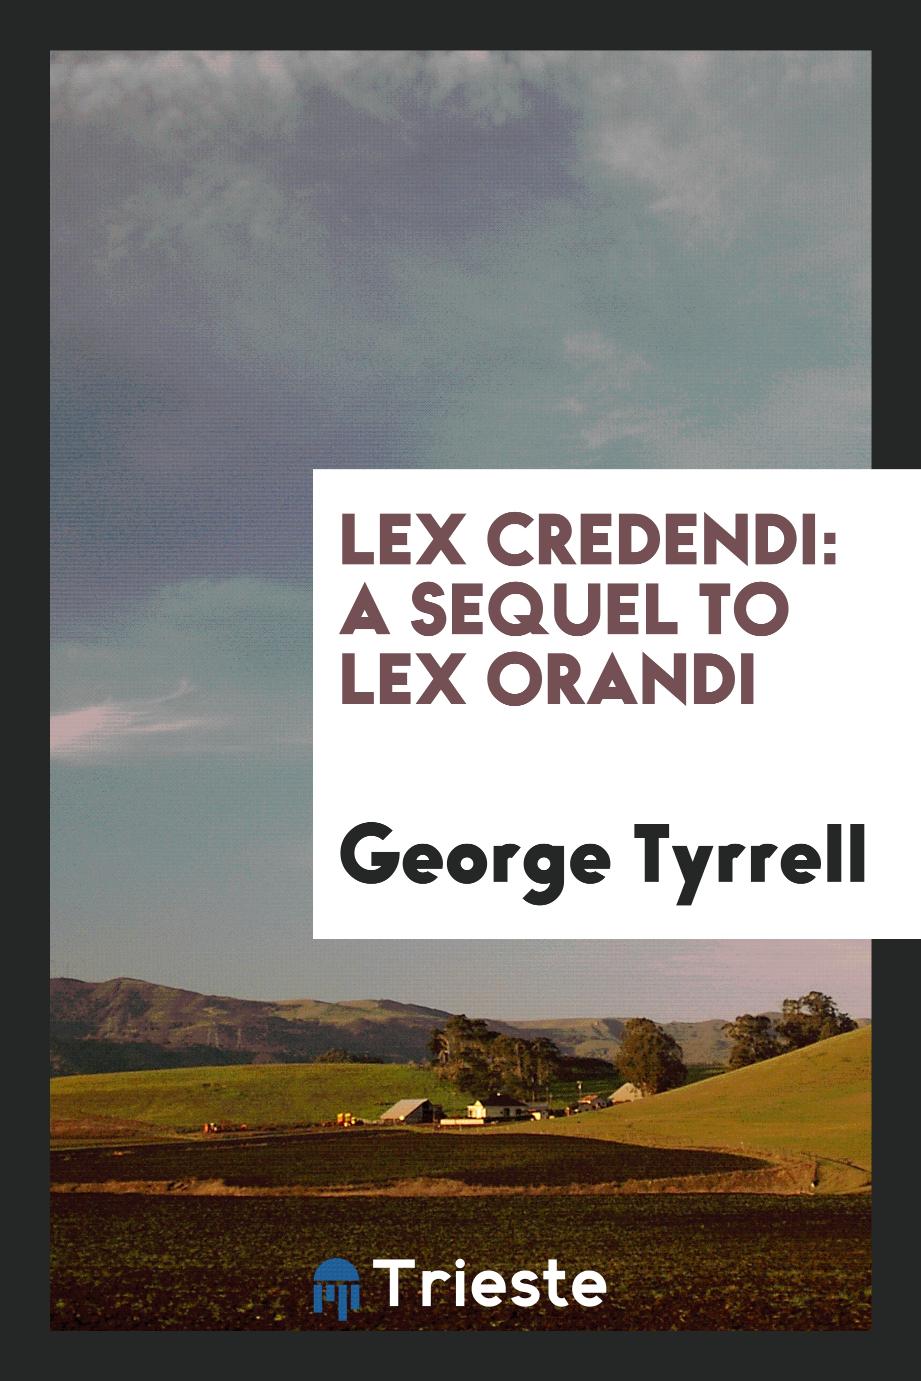 Lex credendi: a sequel to Lex orandi